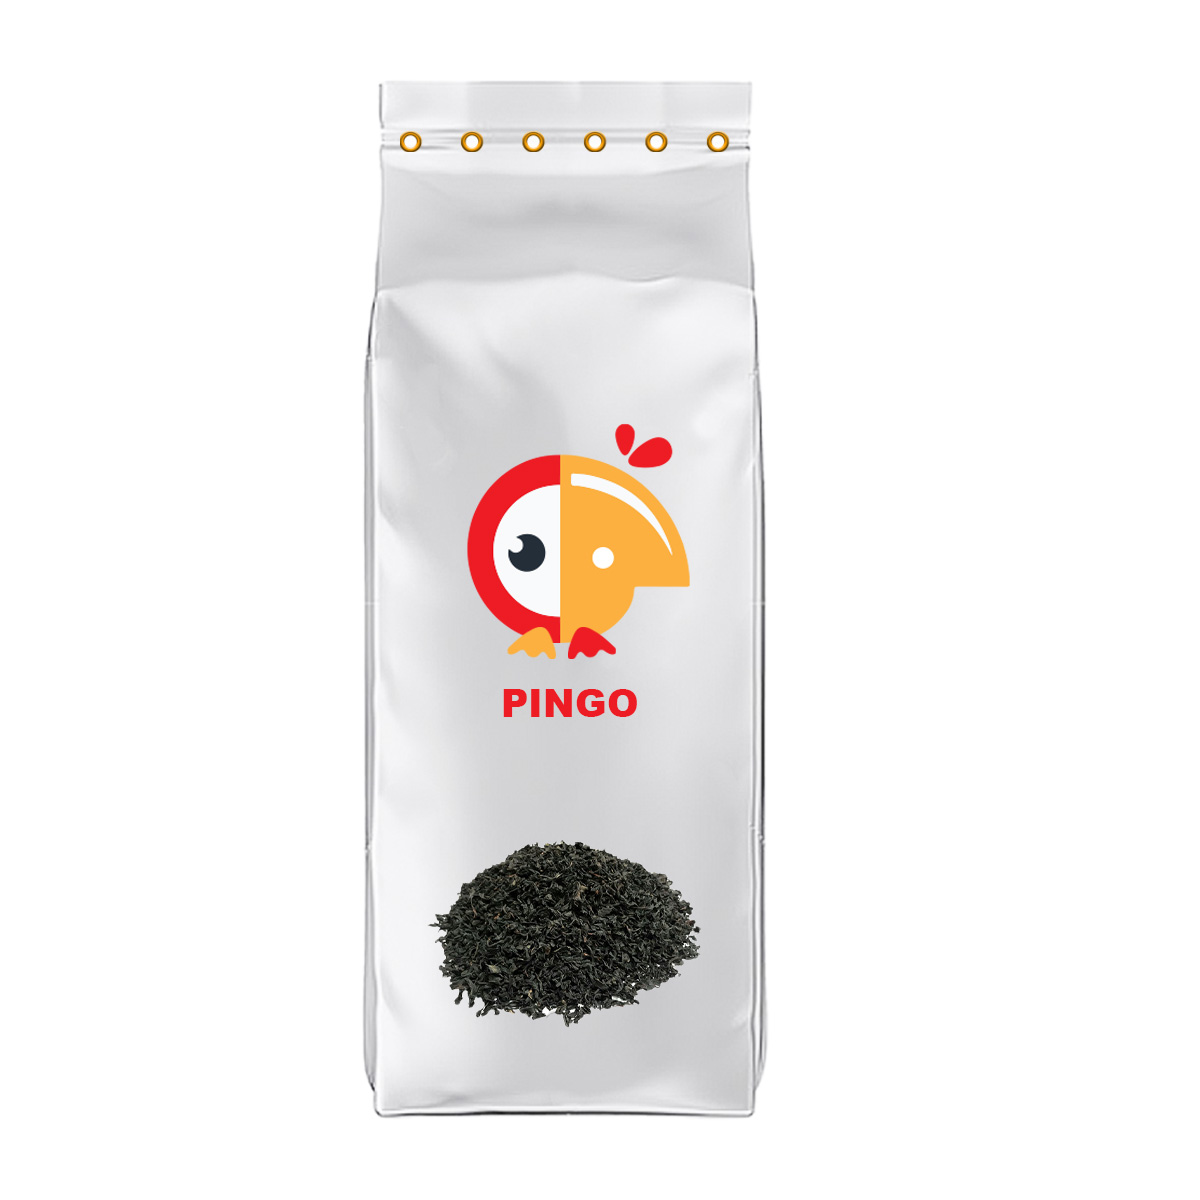 چای باروتی زرین سیلان پینگو - 5 کیلوگرم